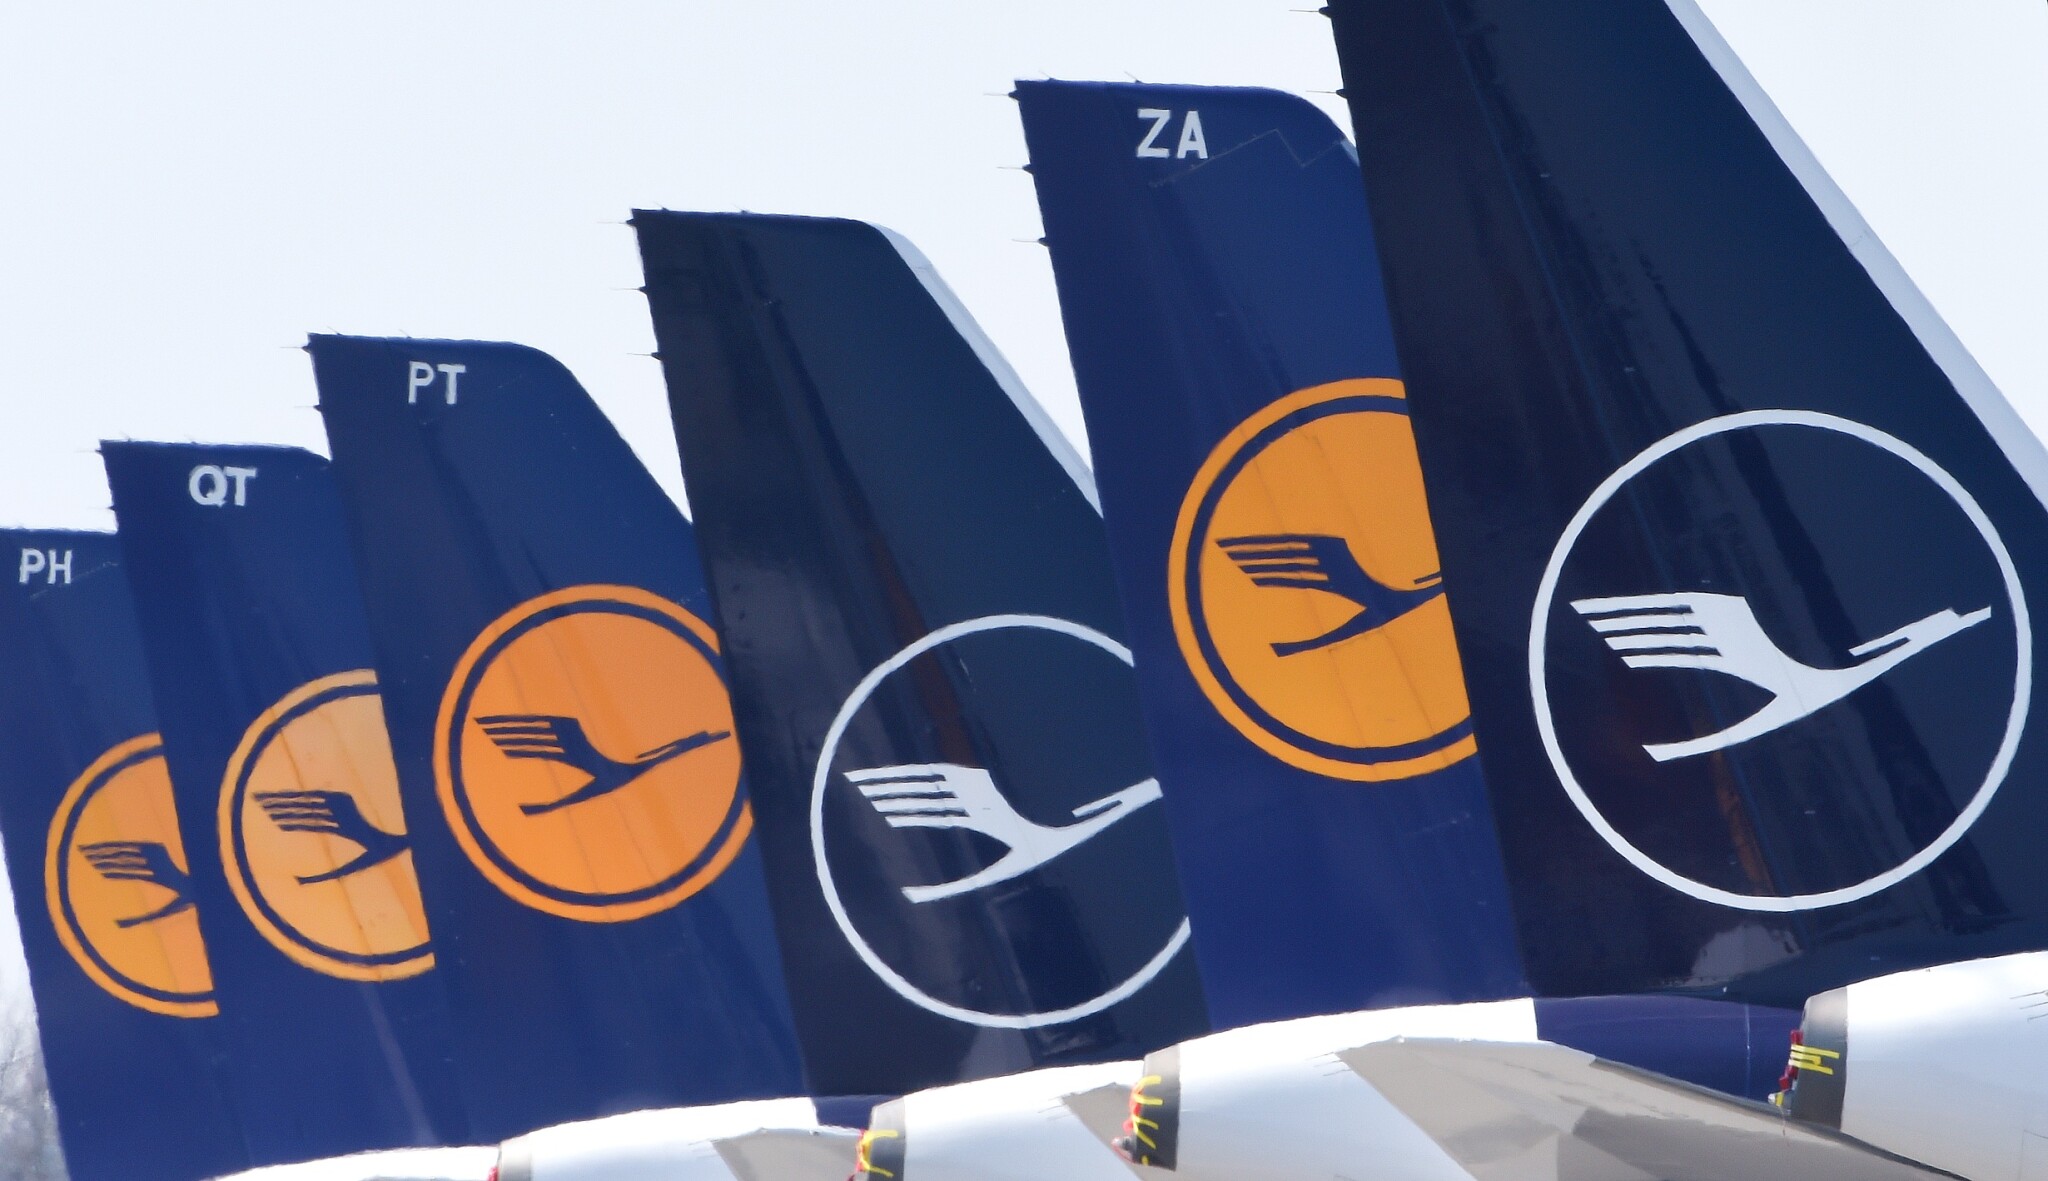 Lufthansa si objednala osmdesát letadel Airbus a Boeing. Na dalších 120 má opci